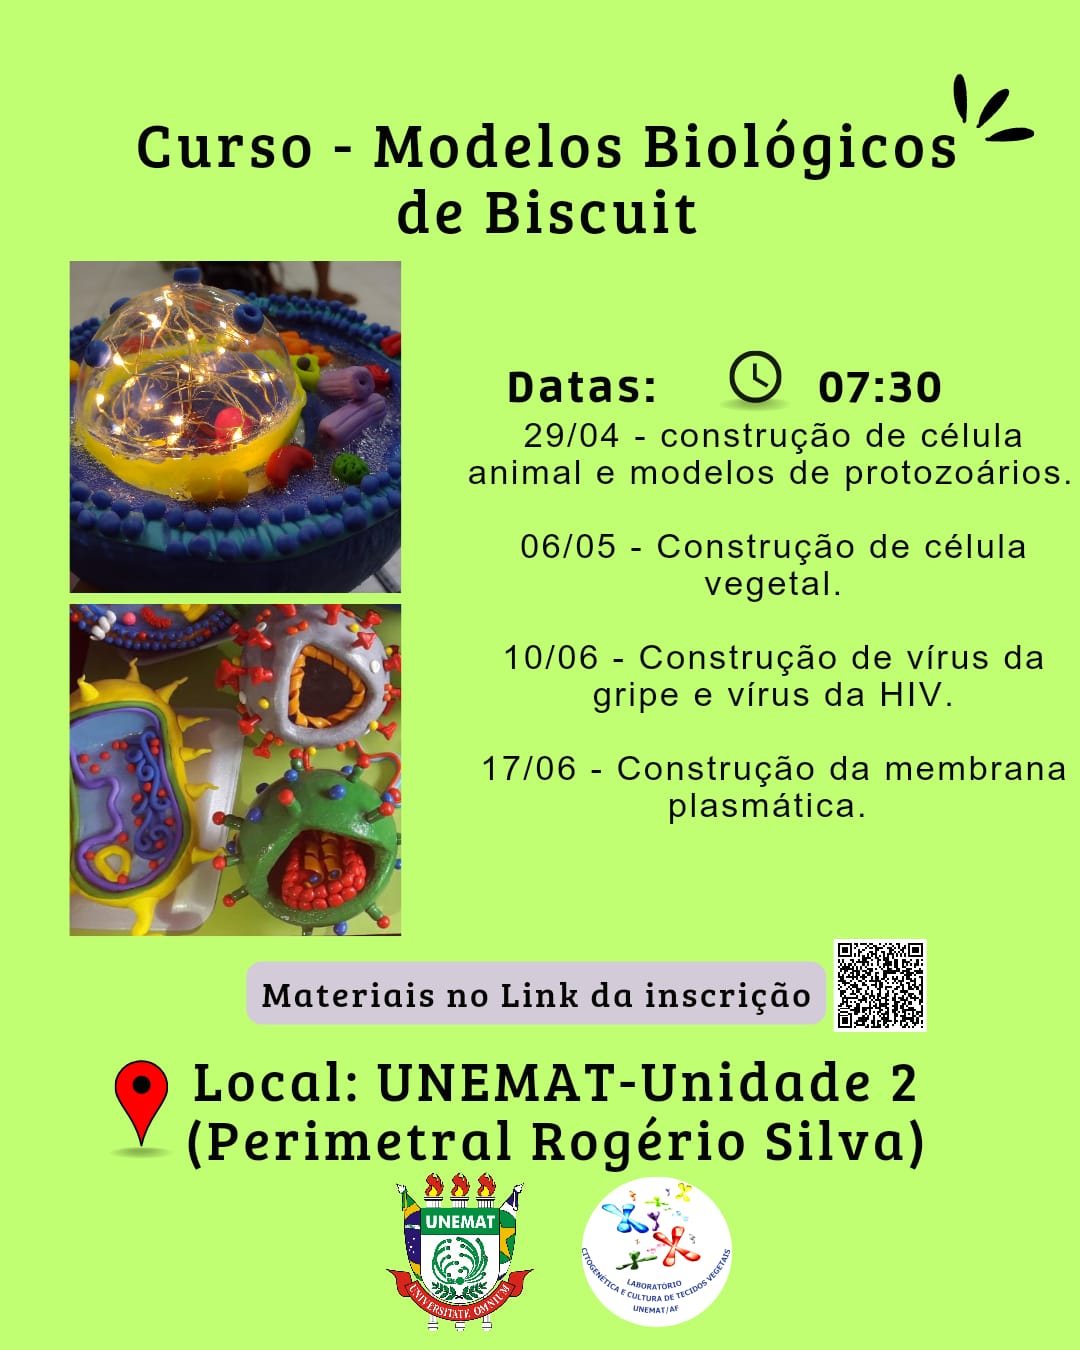 Modelos Biológicos de Biscuit